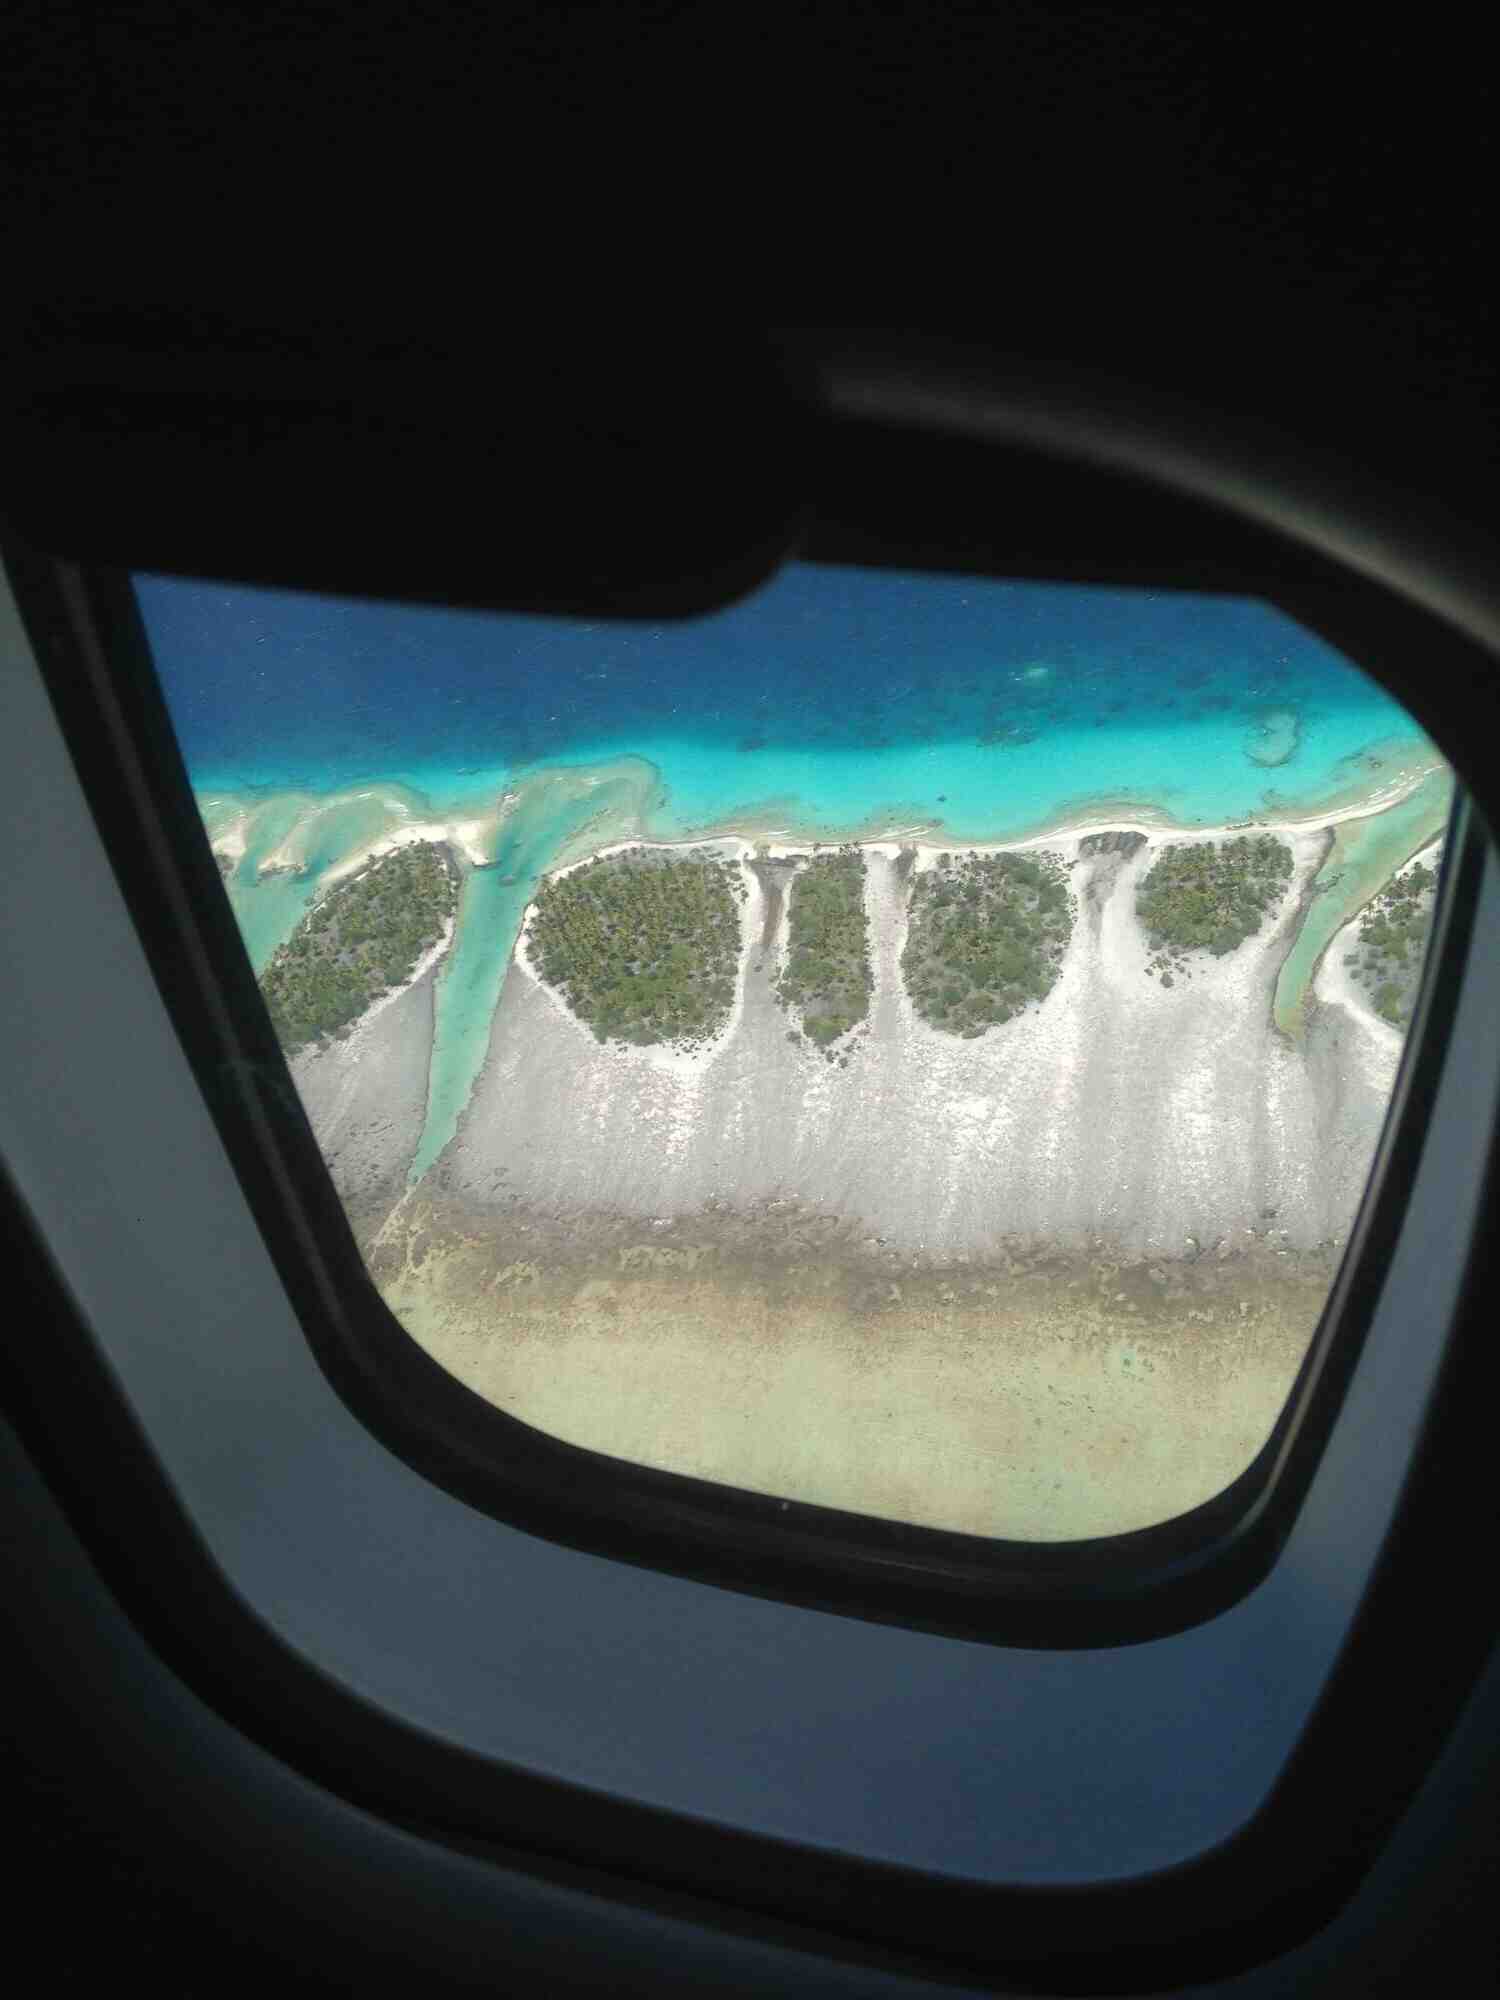 Was sind die zwingenden Gründe für eine Reise nach Polynesien?